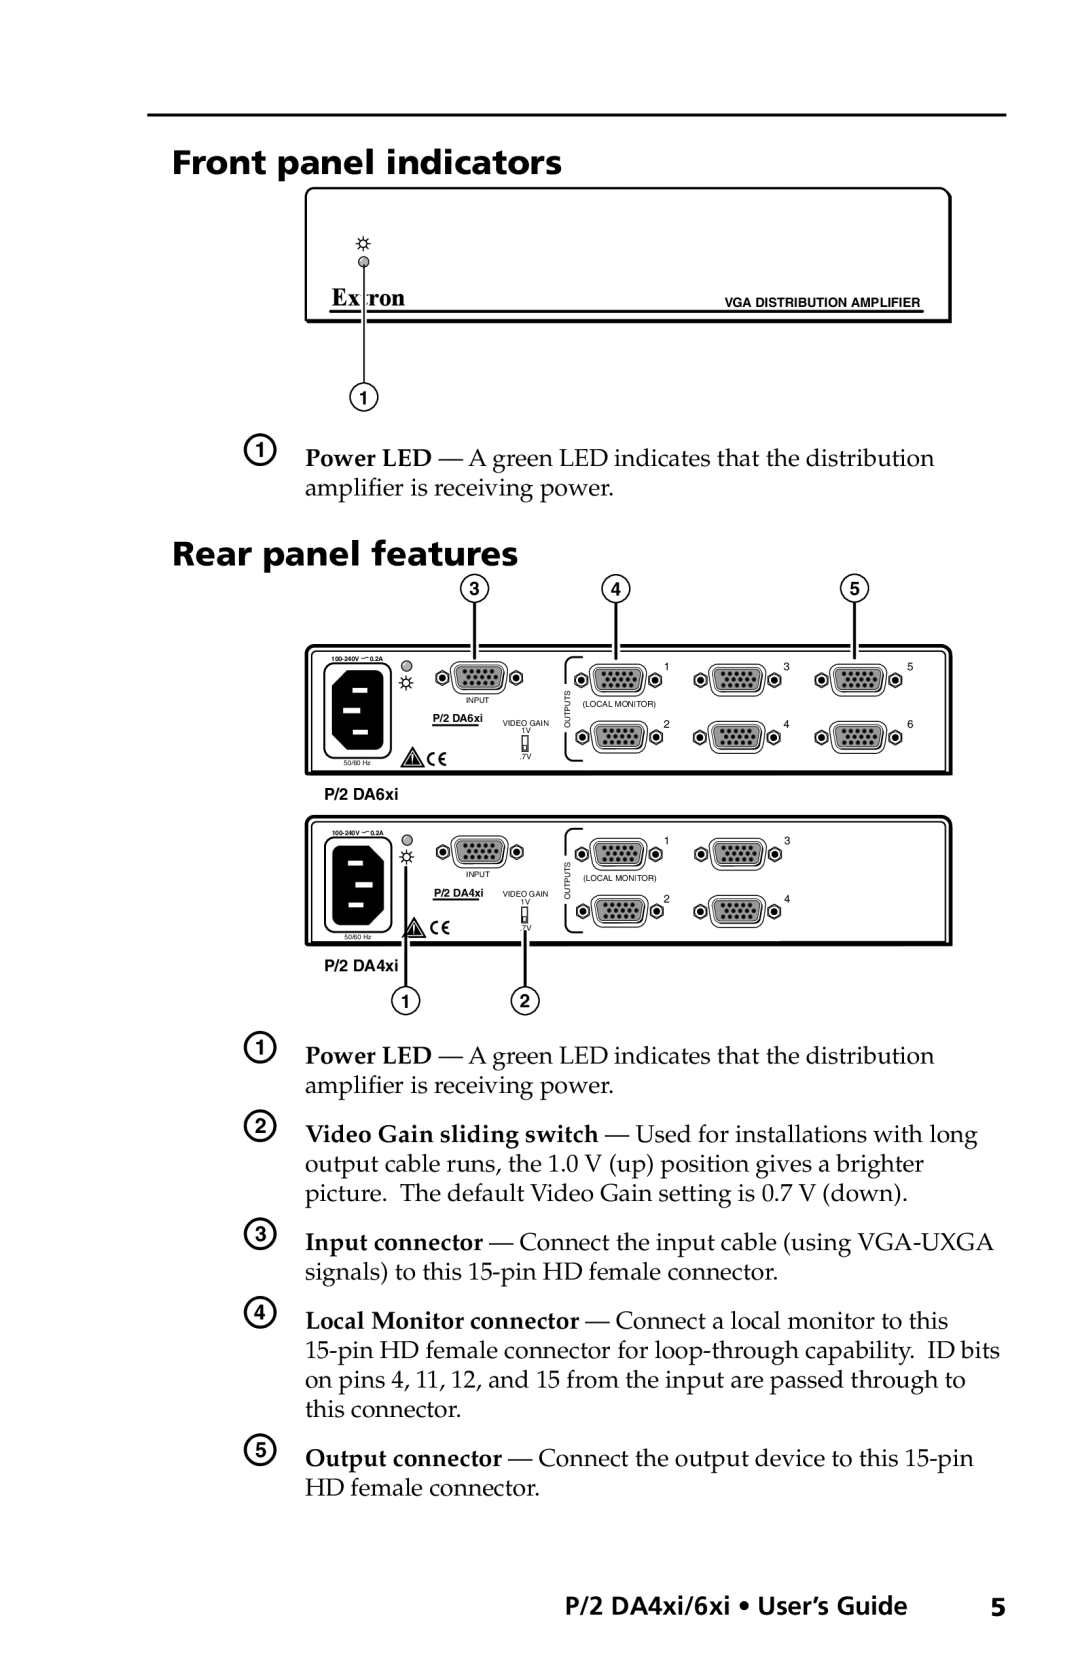 Extron electronic P/2 DA4xi s Front panel indicators, Rear panel features, P/2 DA4xi/6xi User’s Guide, P/2 DA6xi, Outputs 